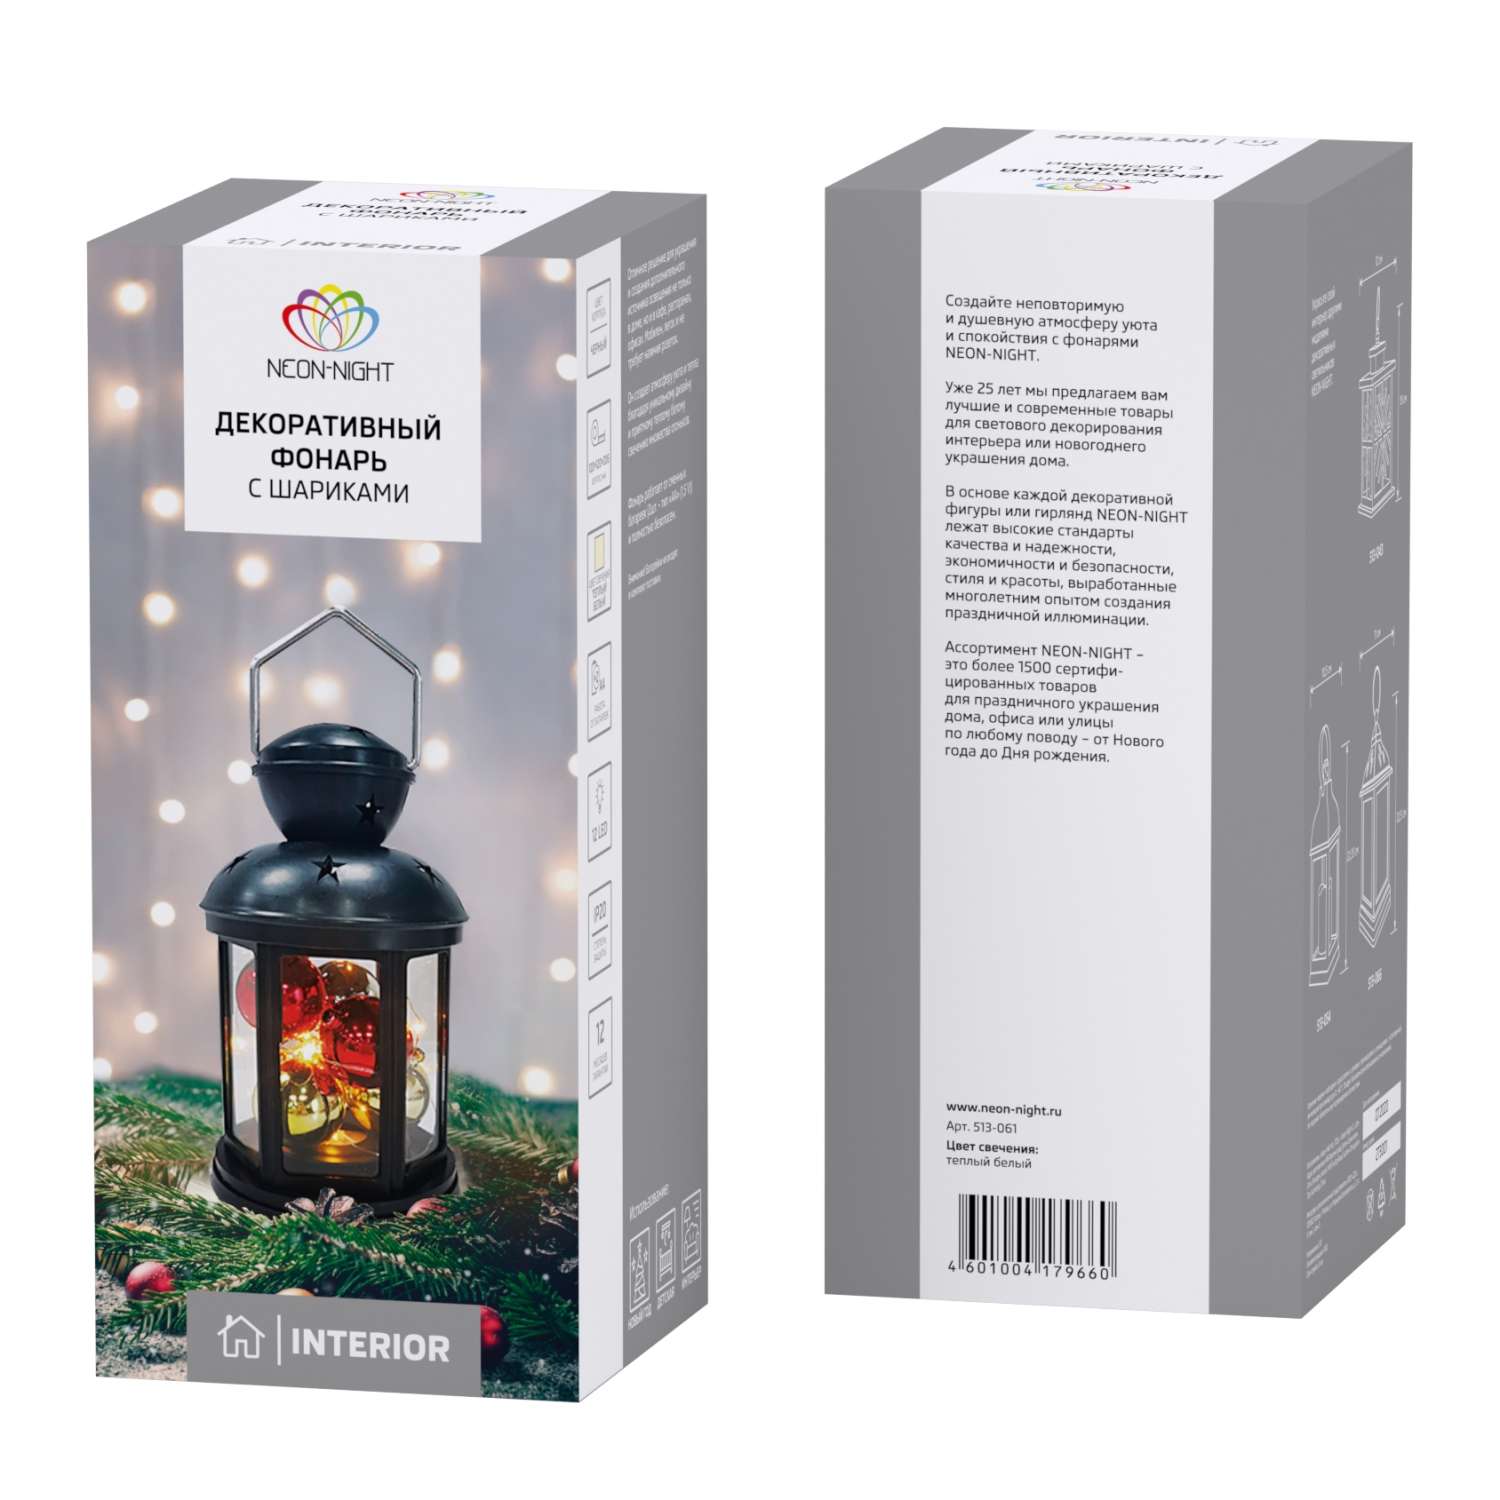 Светодиодный декоративный светильник-ночник NEON-NIGHT с шариками в черном корпусе 513-061 - фото 2